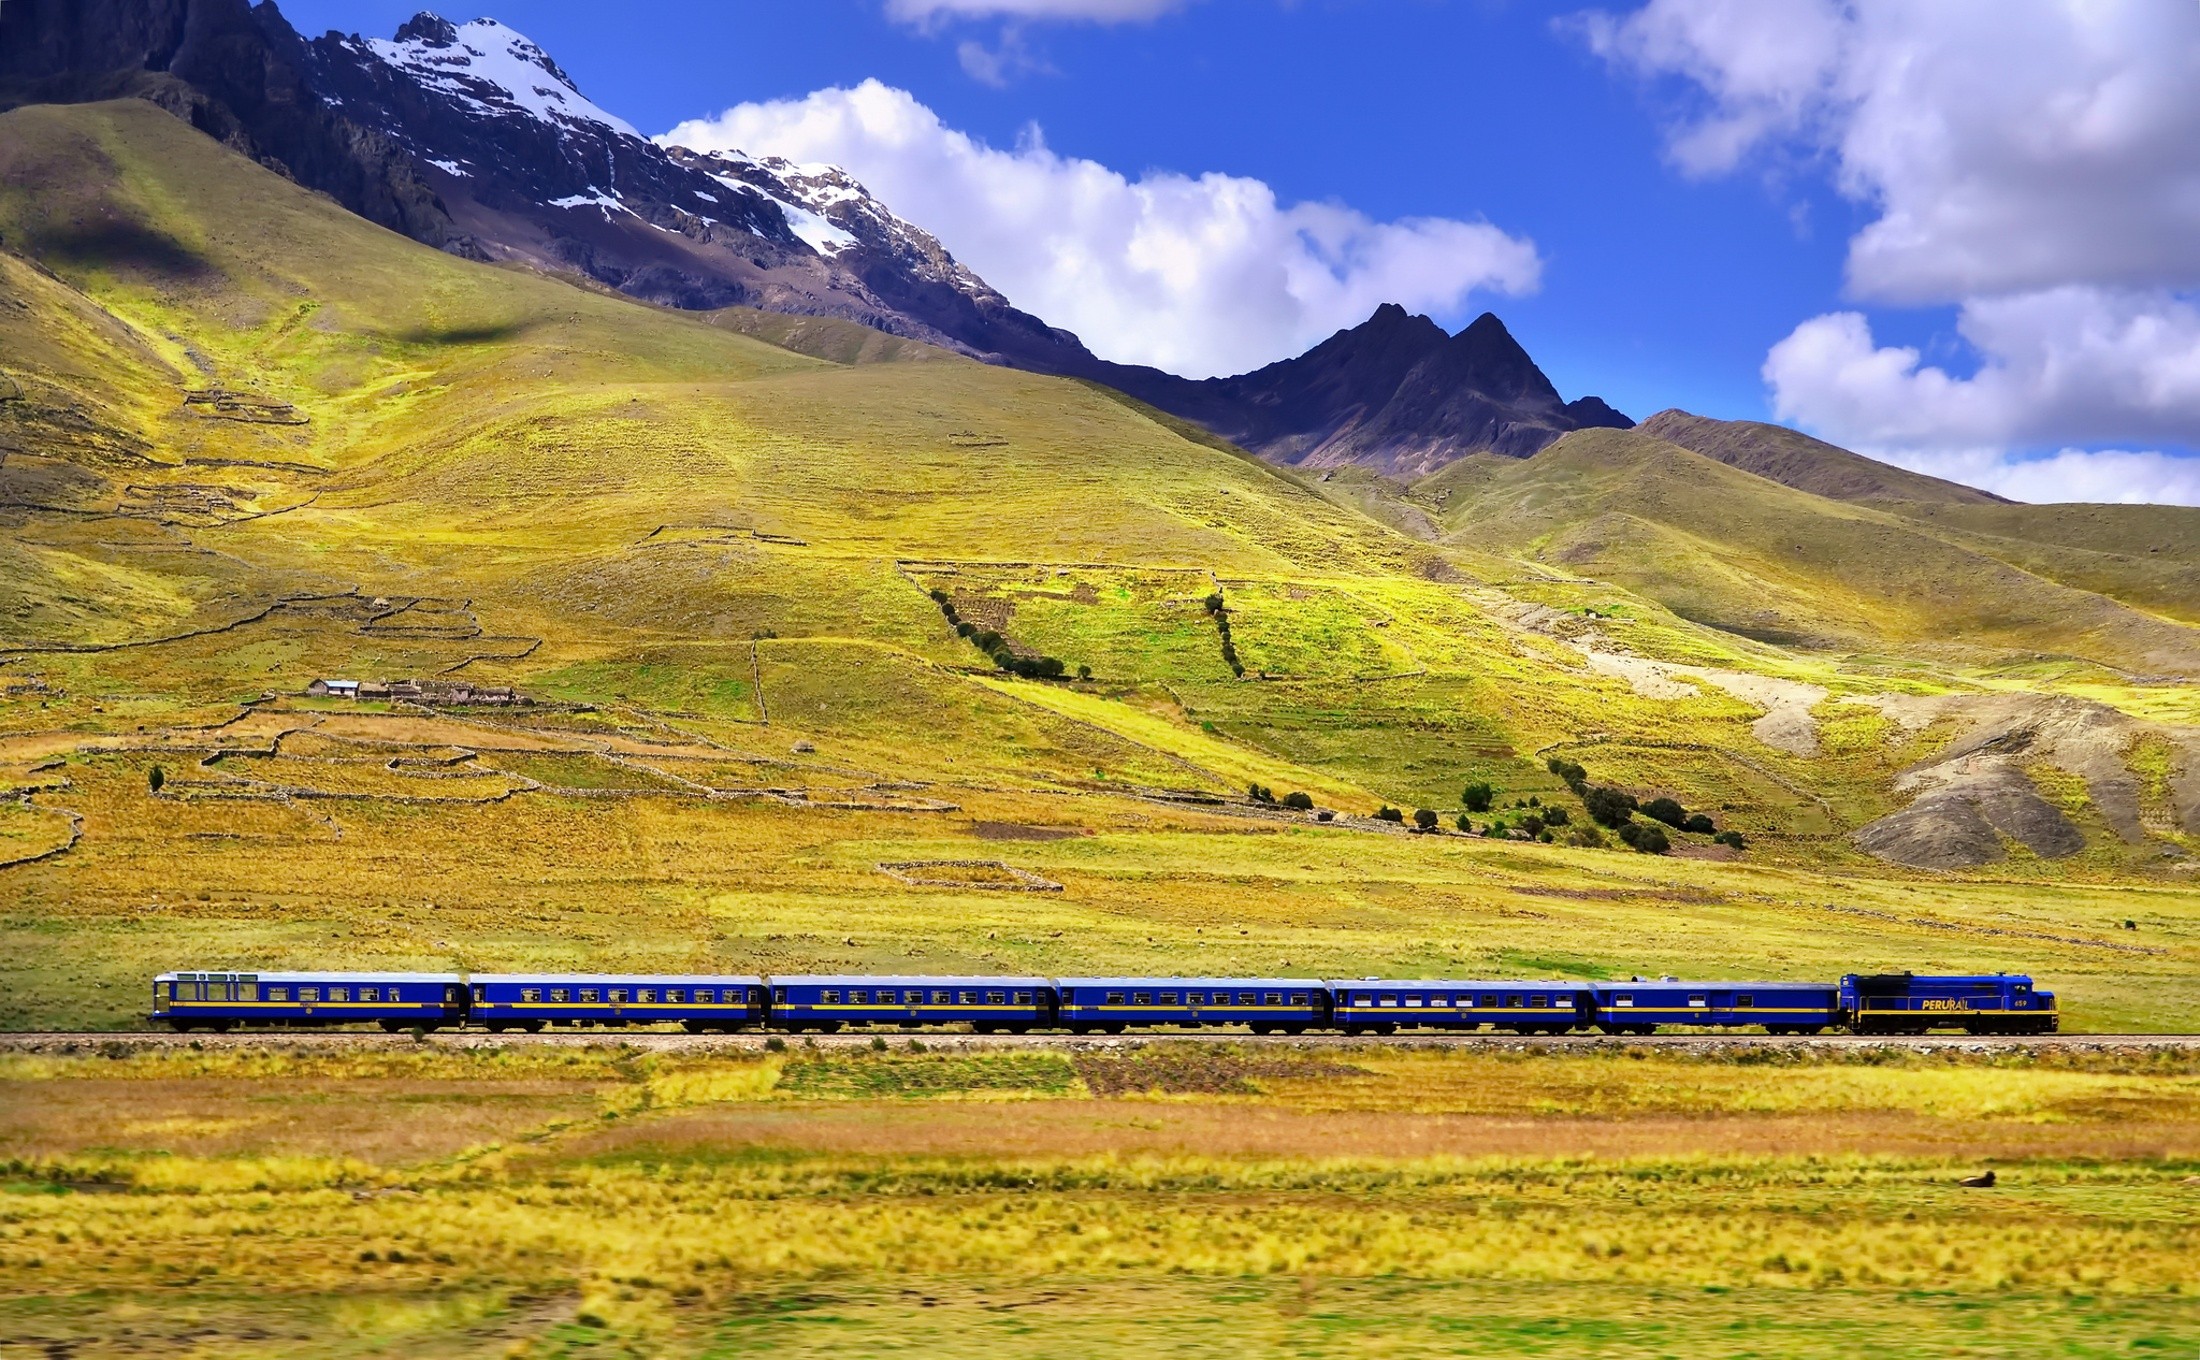 General 2200x1360 train mountains vehicle landscape railway hills plains nature